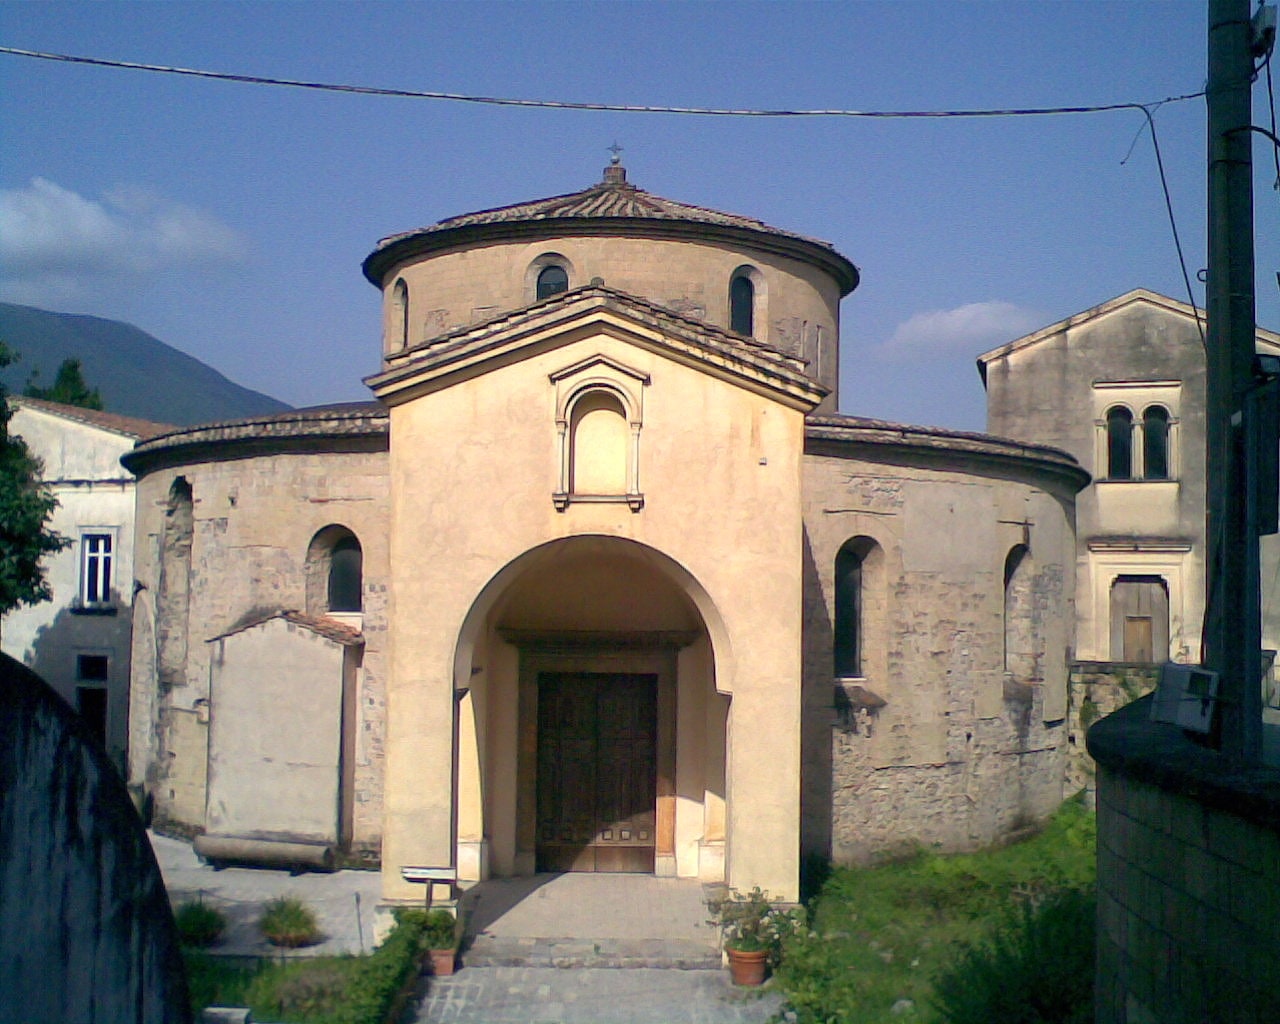 Nocera Superiore, Italy